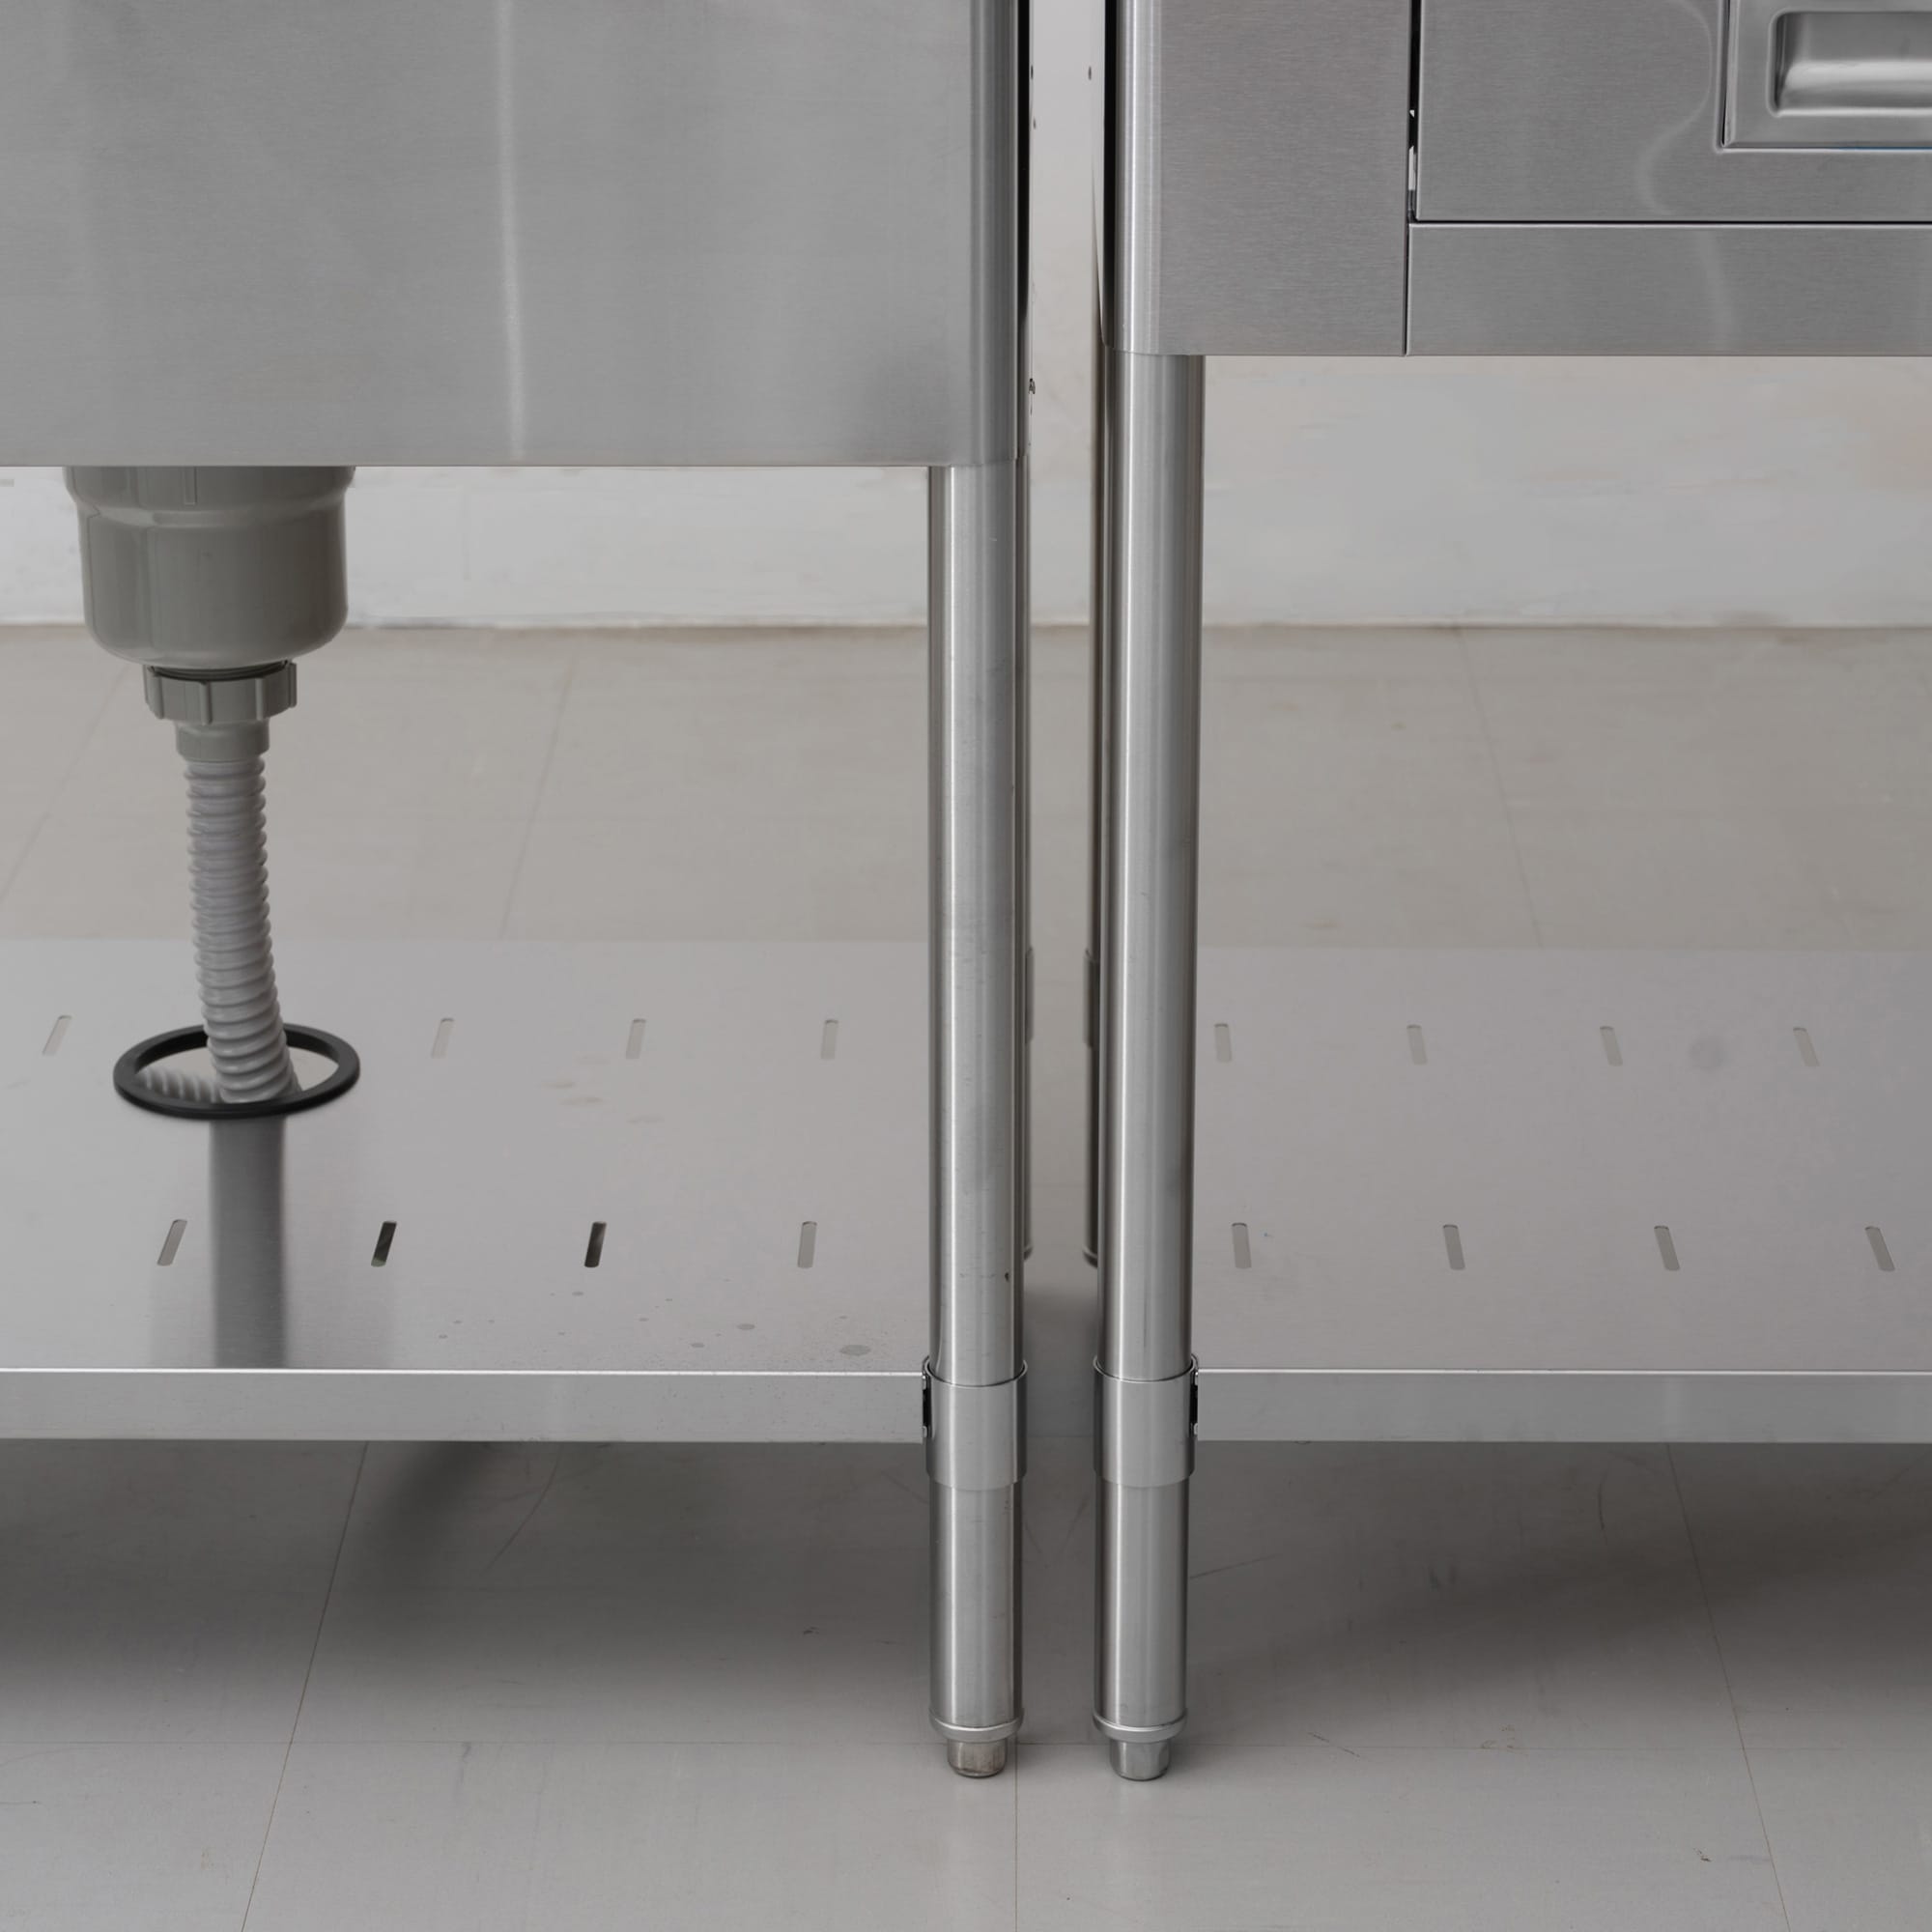 業務用キッチン 一槽シンク KB-KC025-01-G239 並べると脚と脚の間に隙間ができます